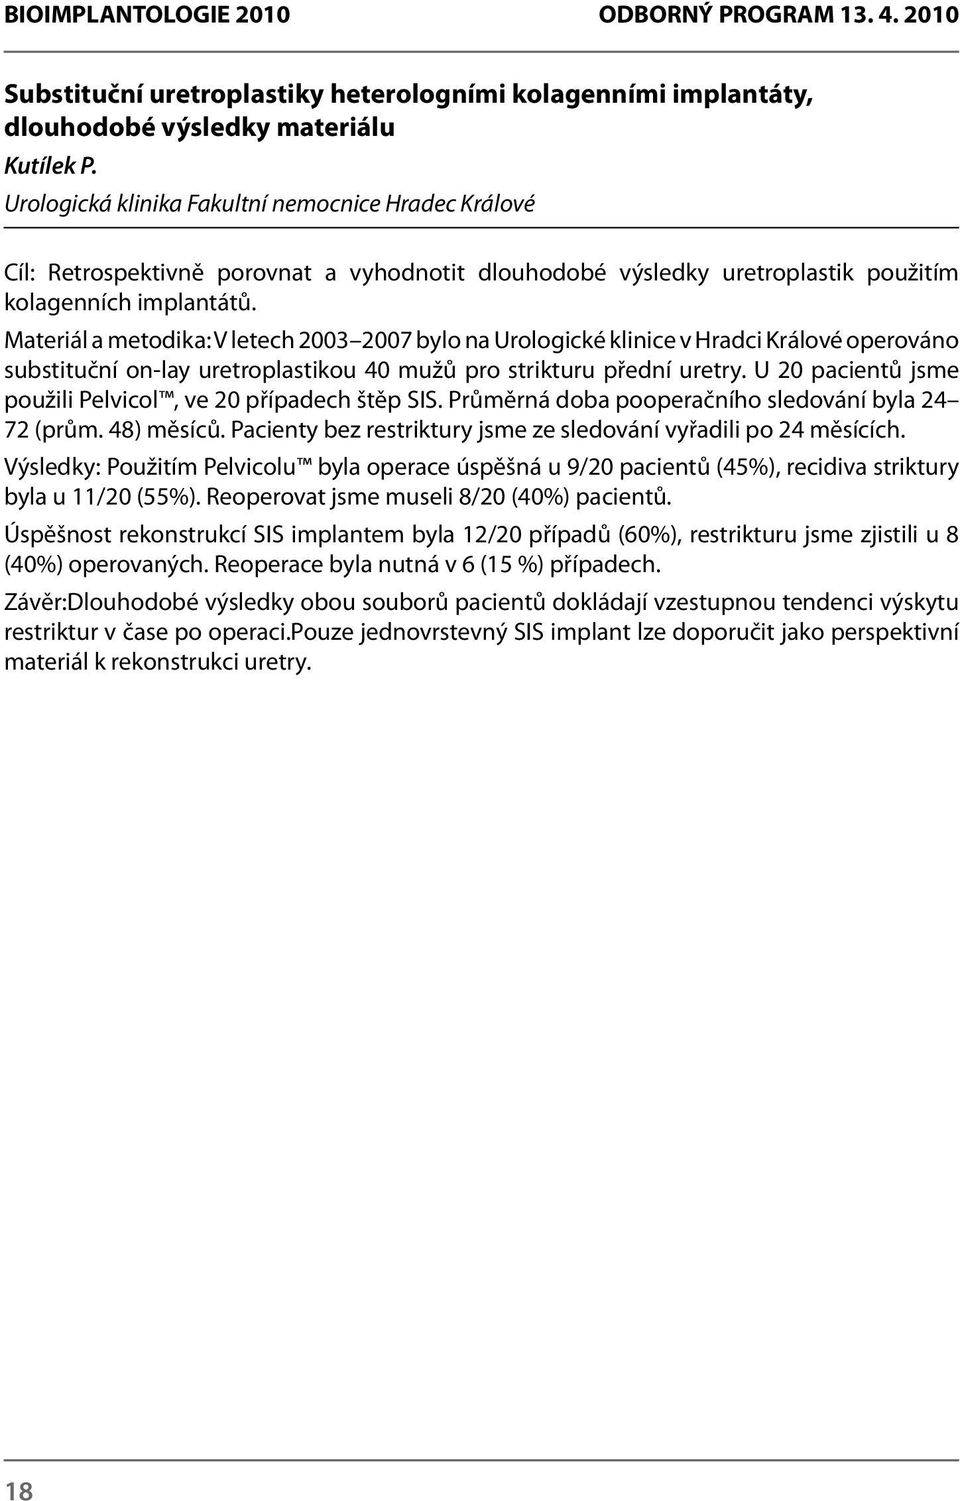 Materiál a metodika: V letech 2003 2007 bylo na Urologické klinice v Hradci Králové operováno substituční on-lay uretroplastikou 40 mužů pro strikturu přední uretry.